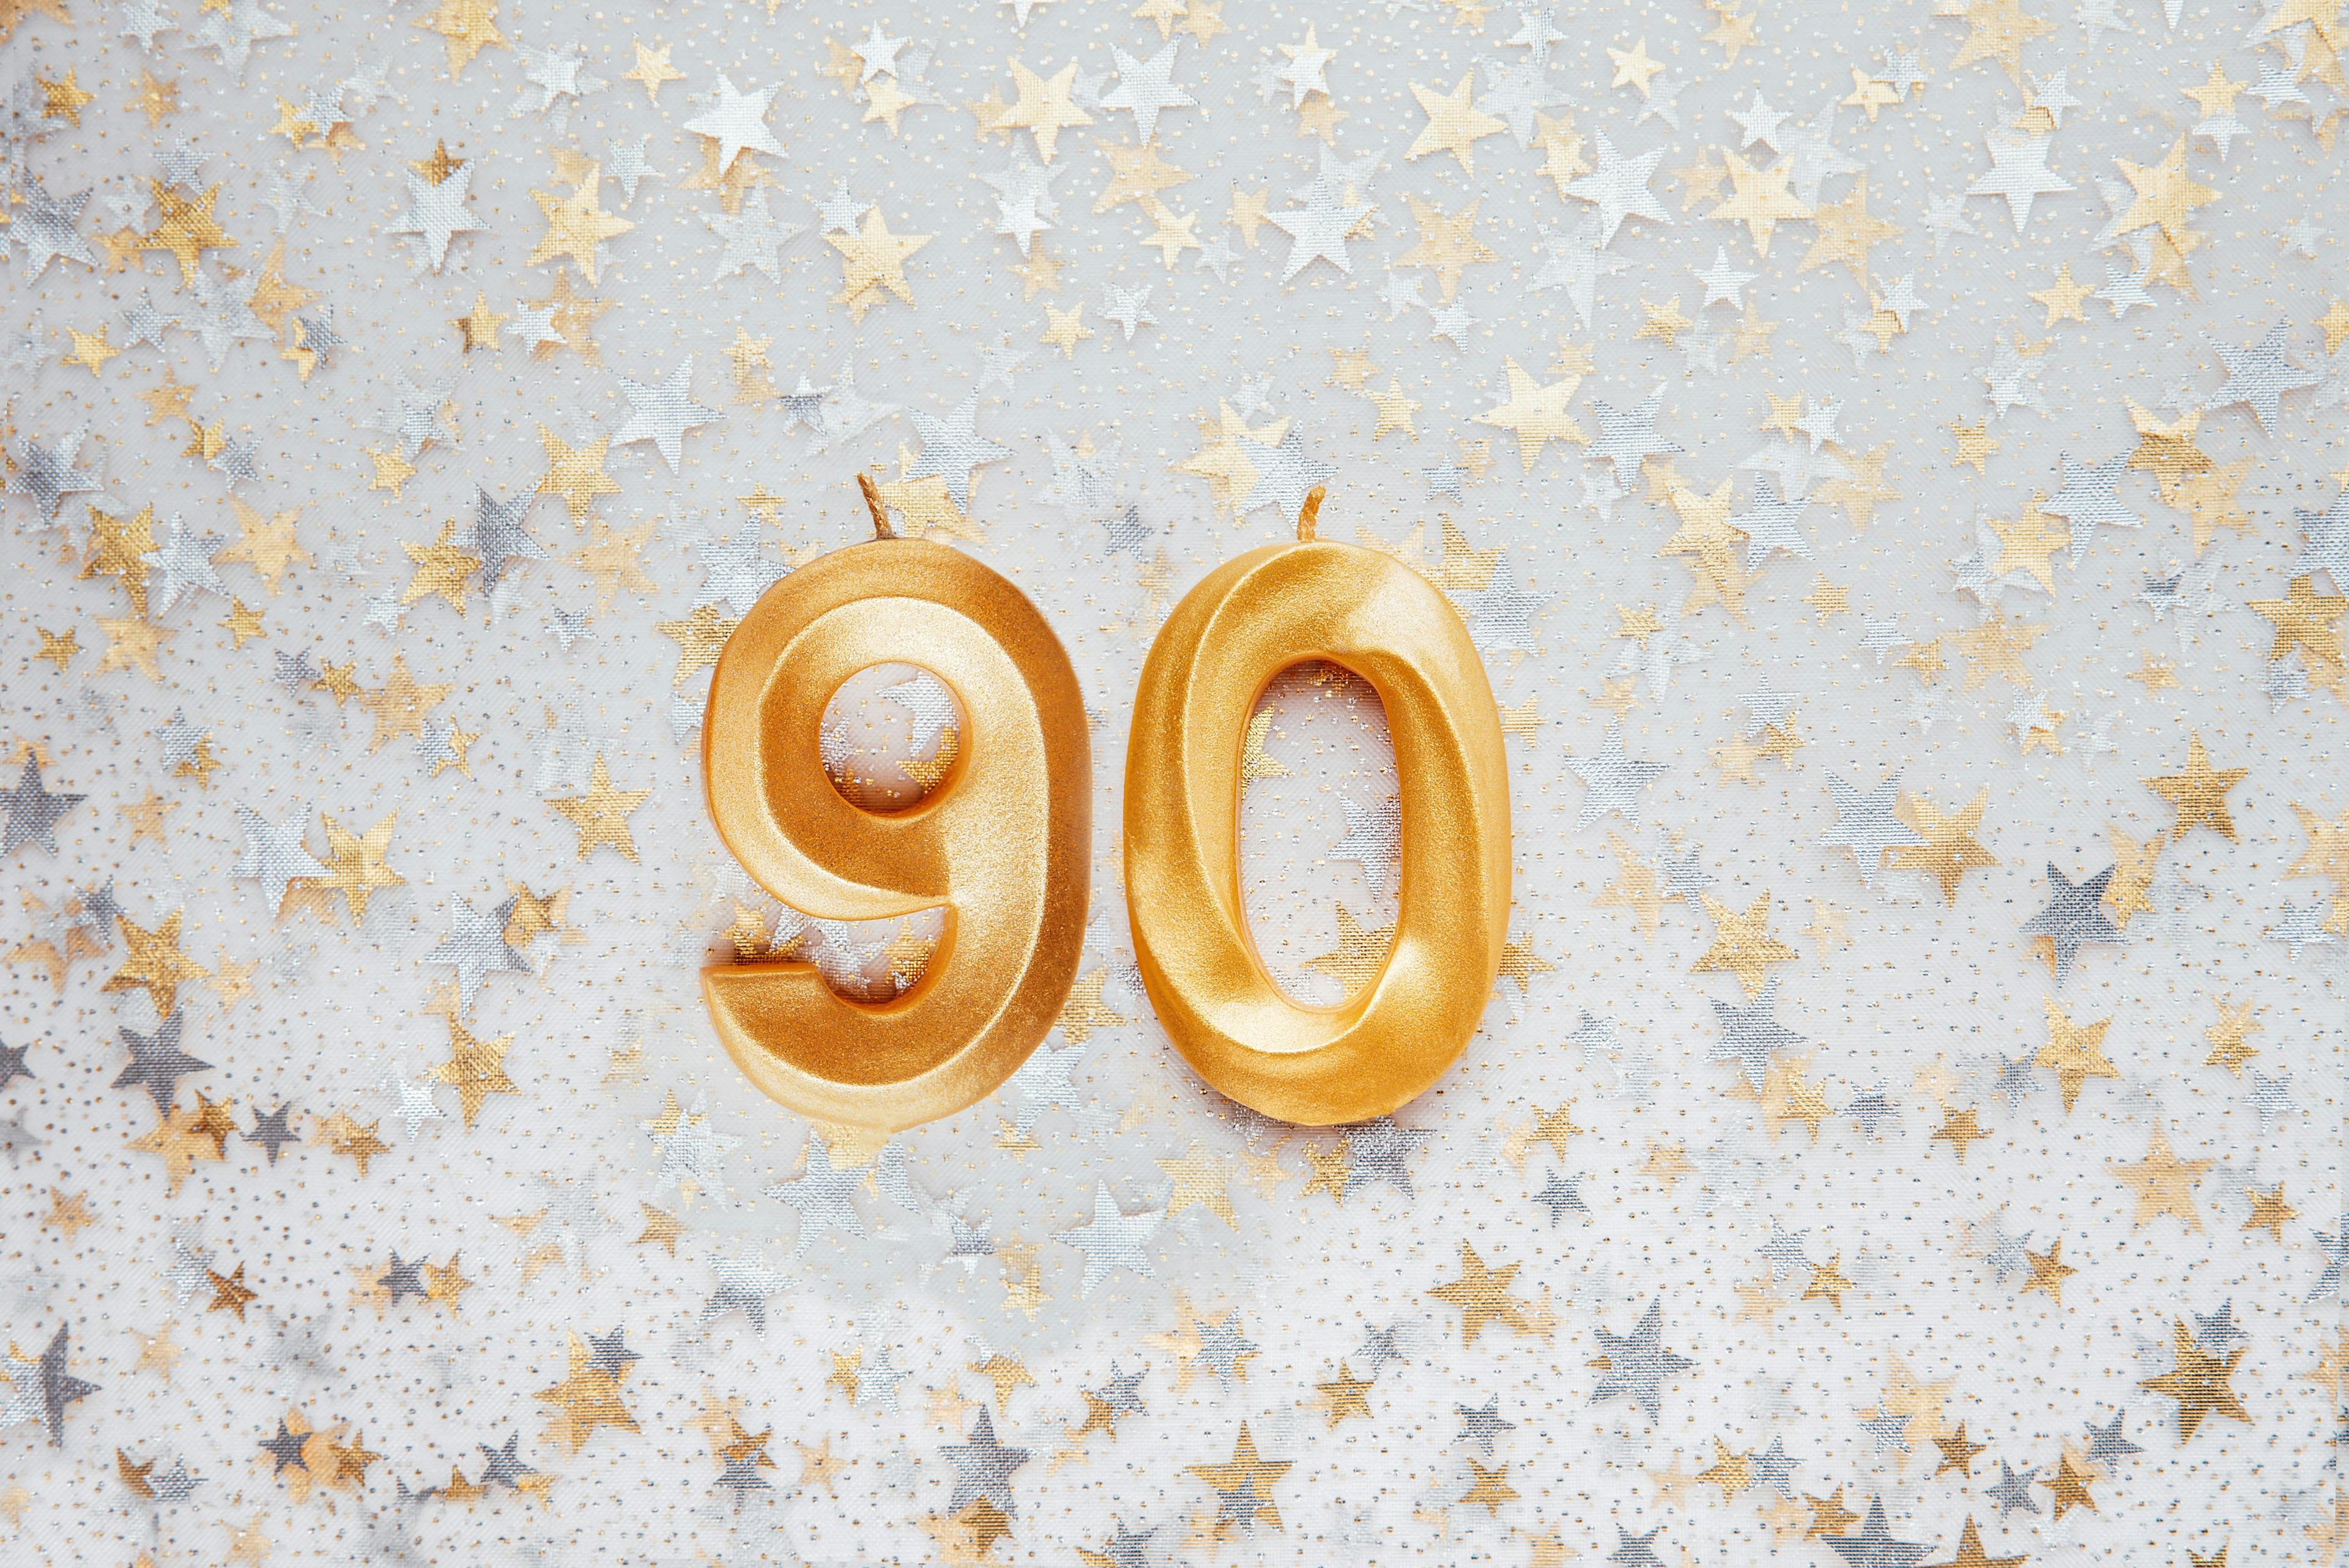 Der 90. Geburtstag ist ein Geschenk für uns alle!